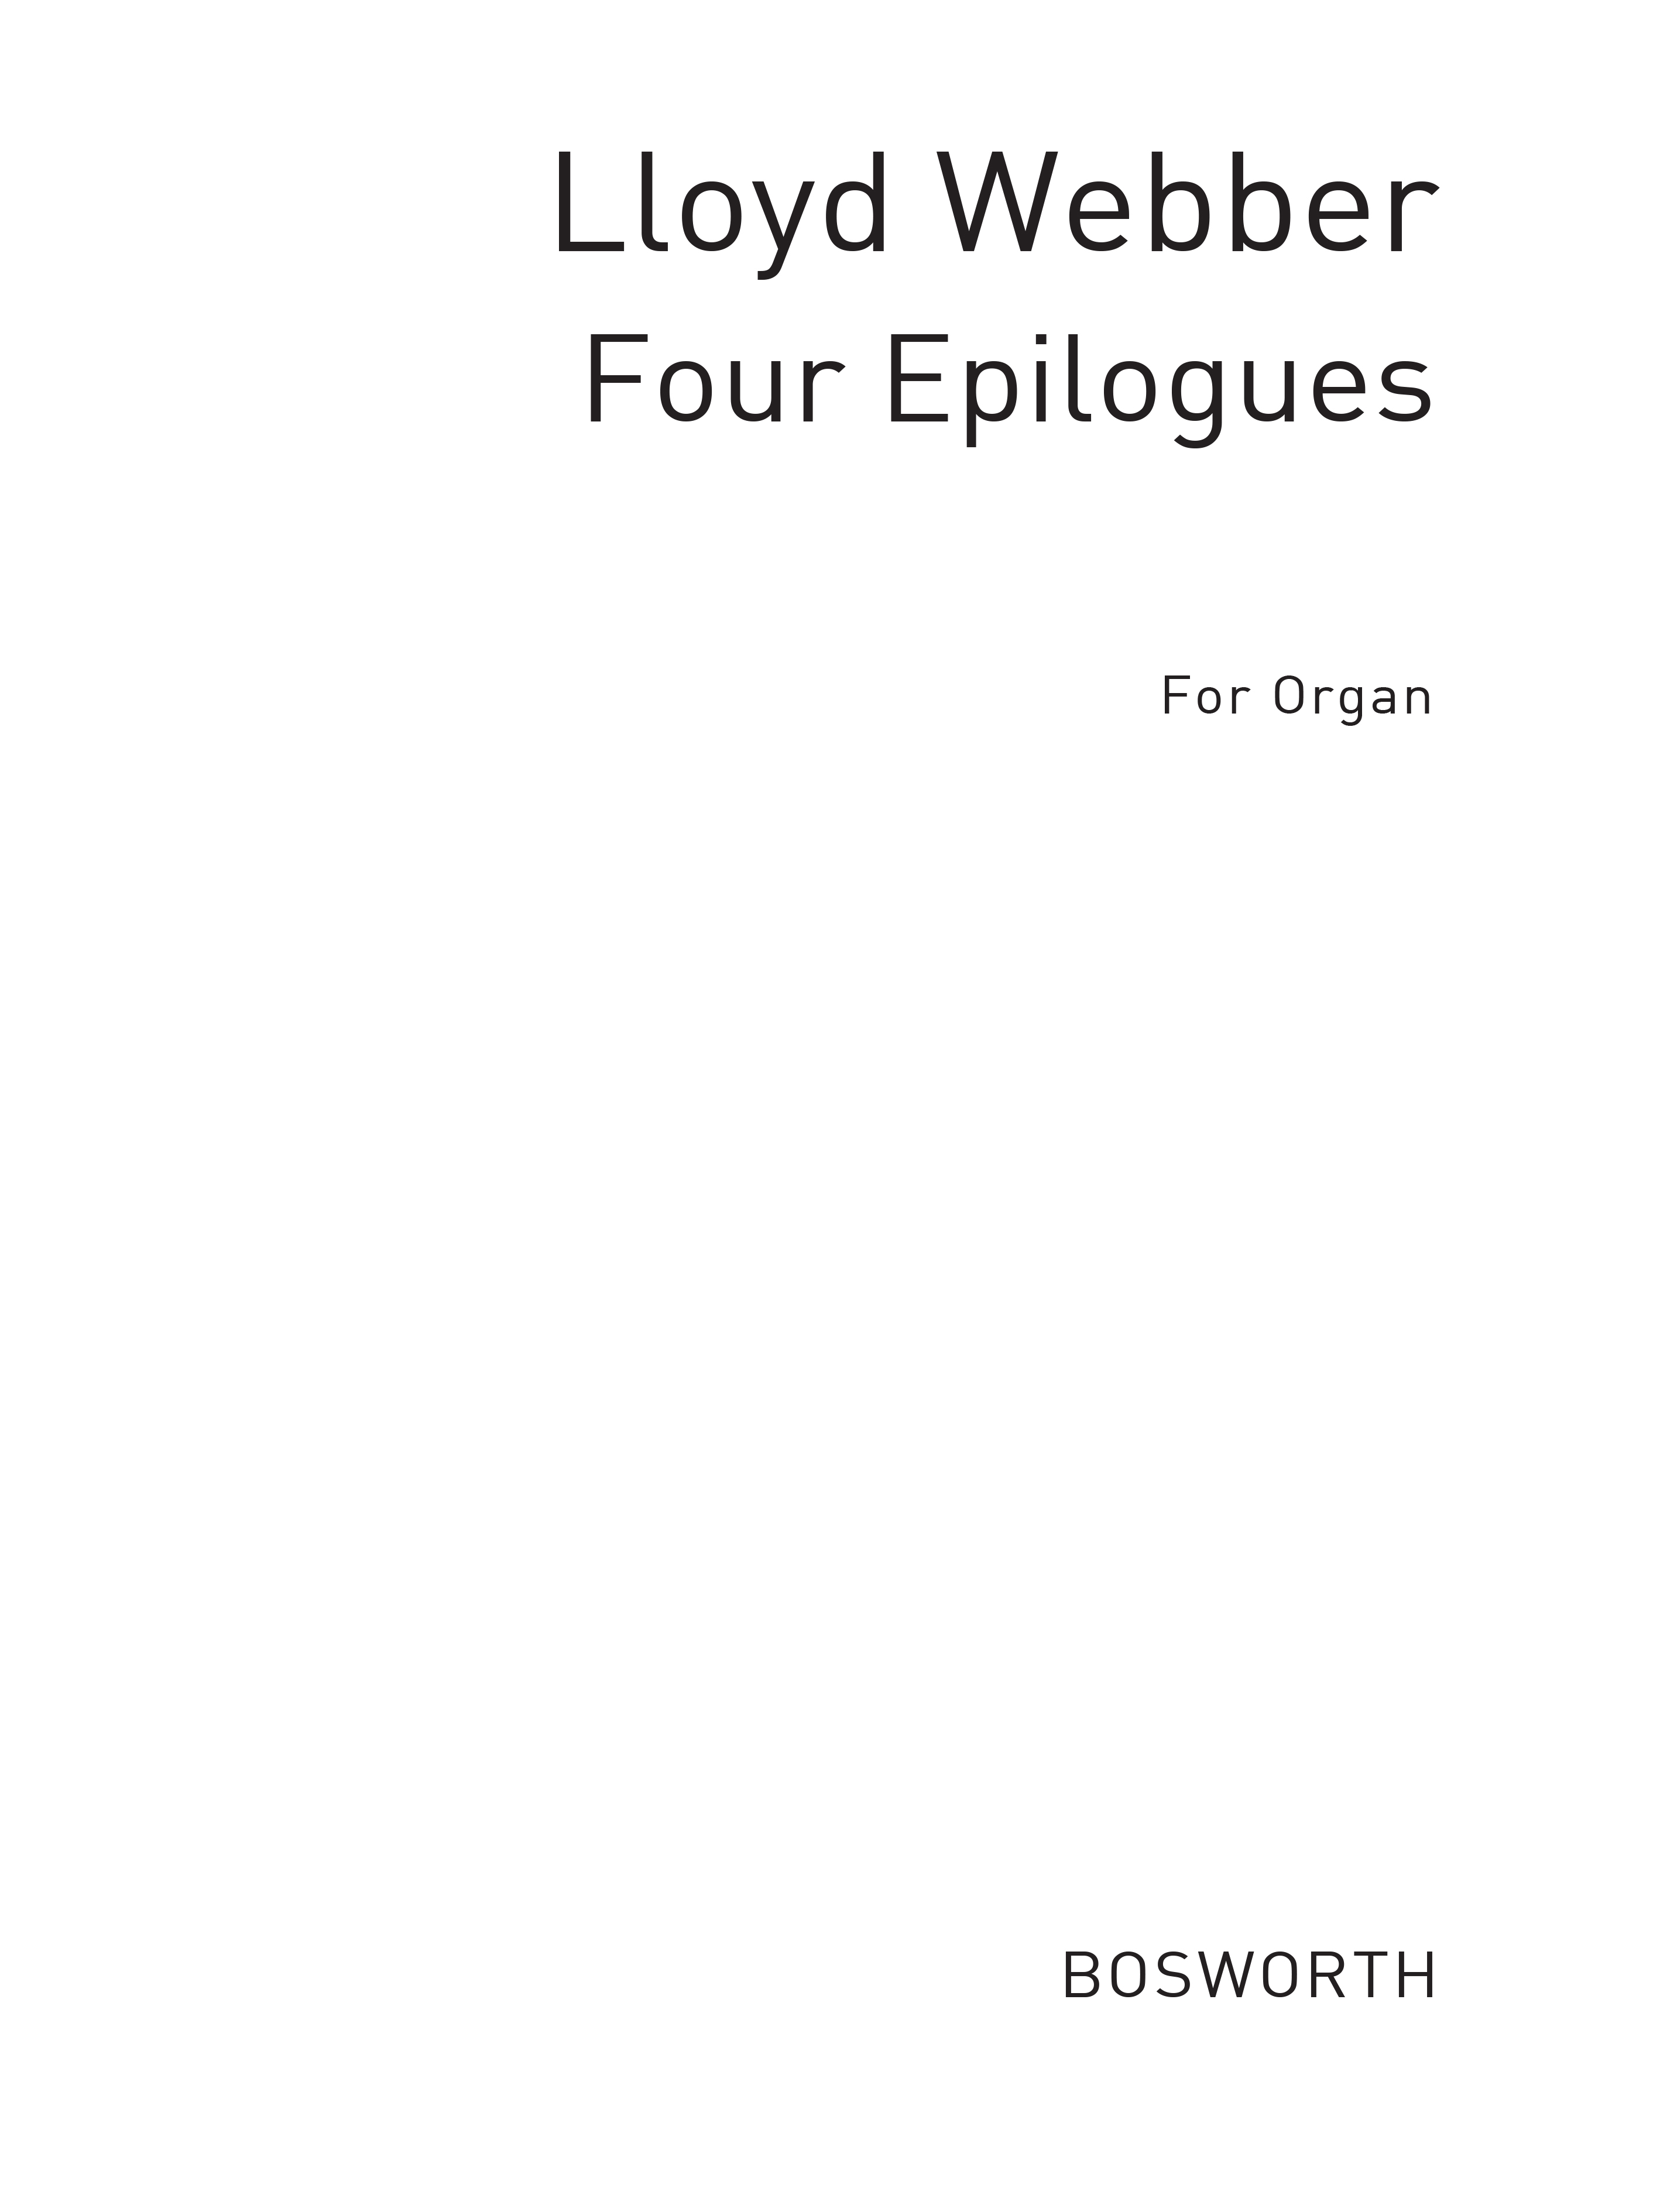 William Lloyd Webber: Four Epilogues For Organ: Organ: Instrumental Work